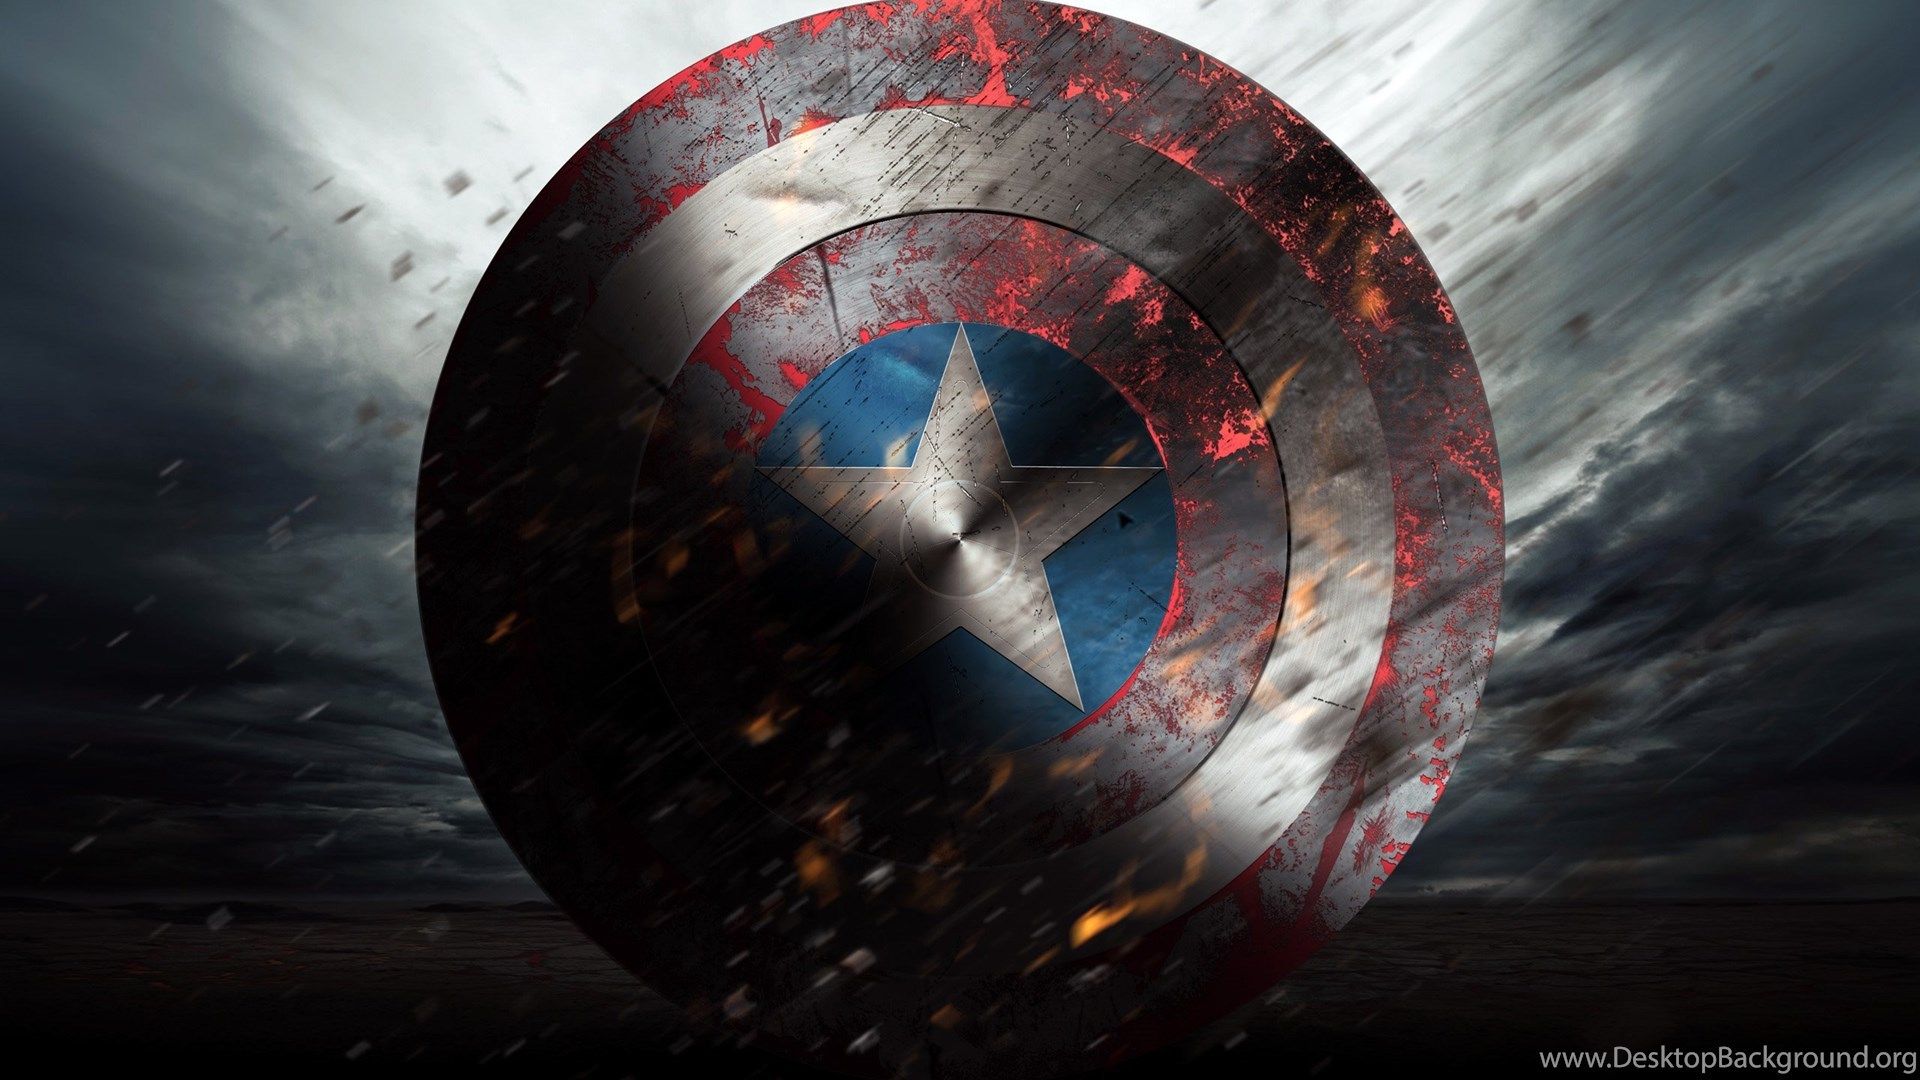 Los 10 mejores fondos de pantalla de Capitán América en HD que debes descargar